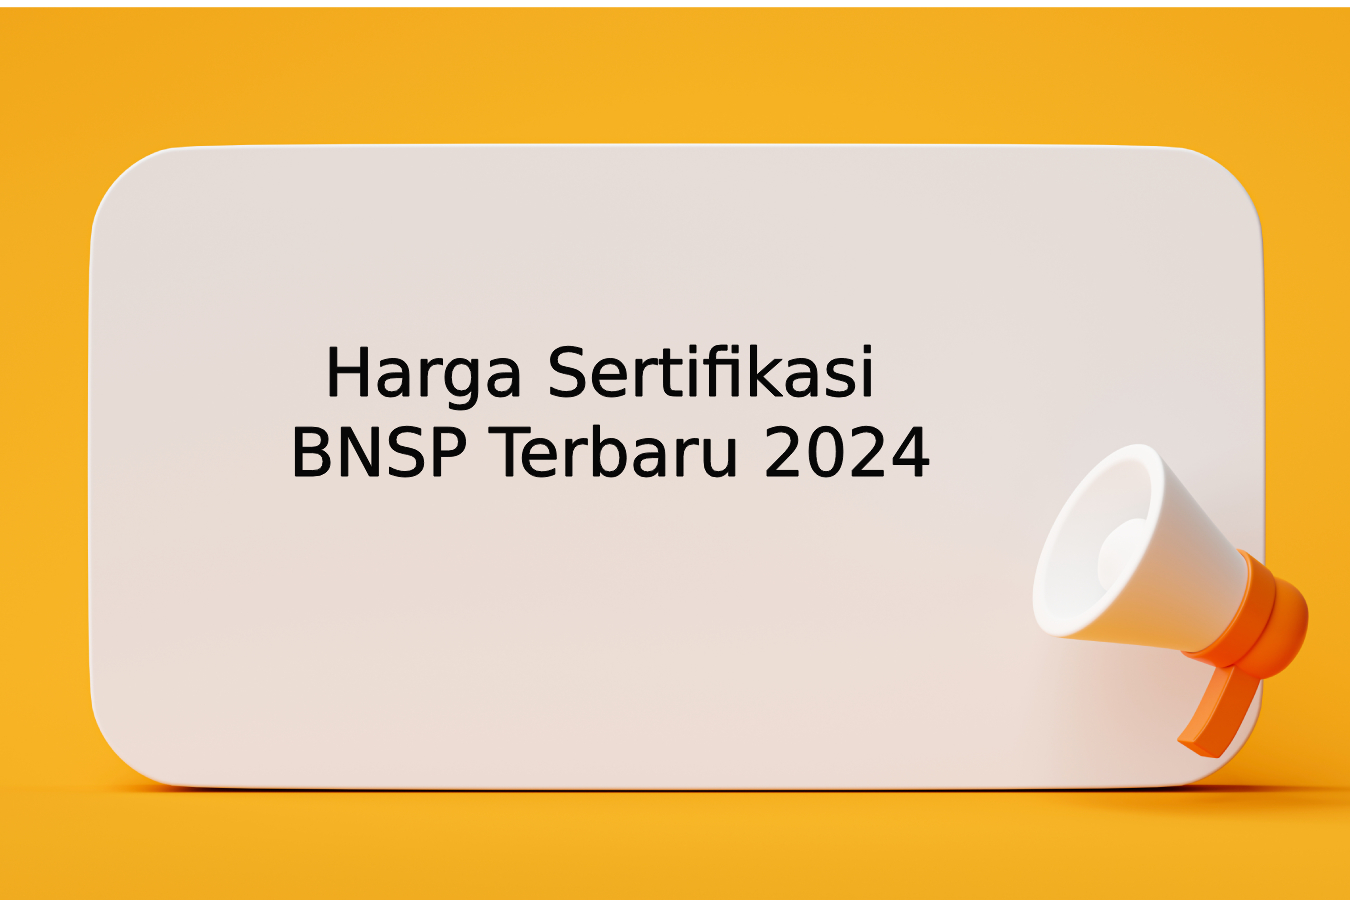 Harga Sertifikasi BNSP Terbaru 2024